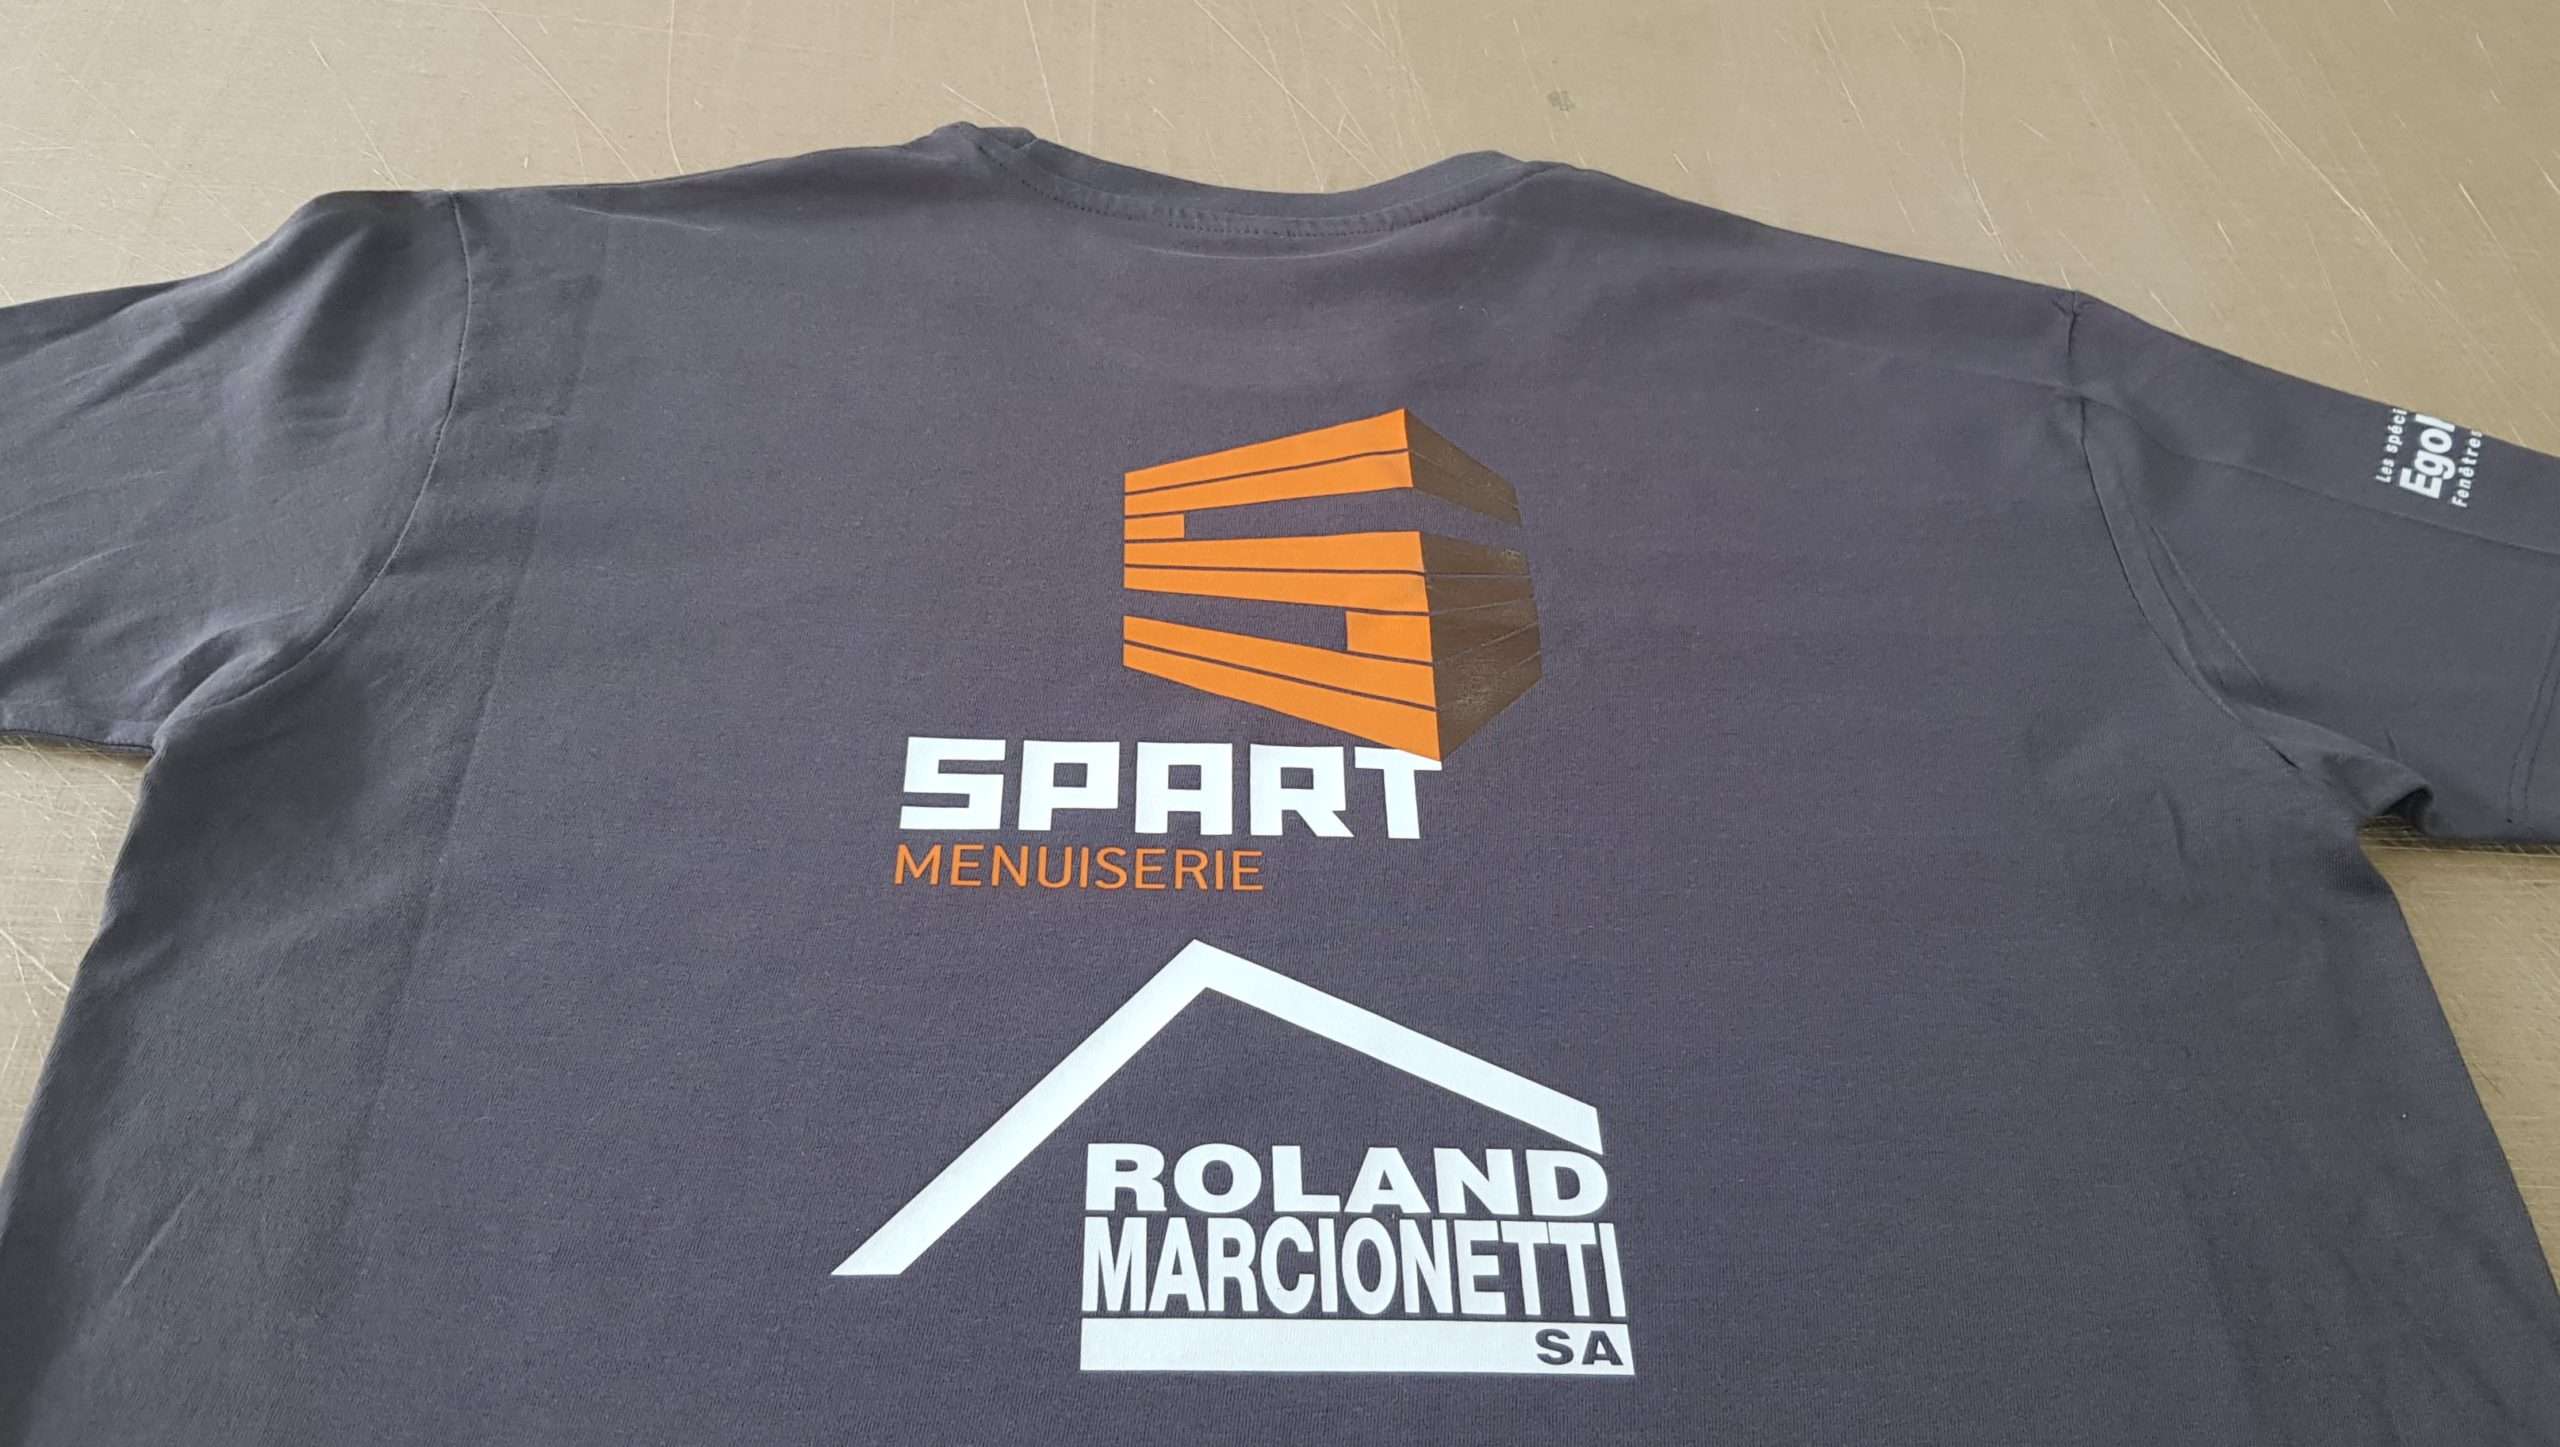 Textiles Menuiserie Spart Sàrl & Marcionetti Roland SA